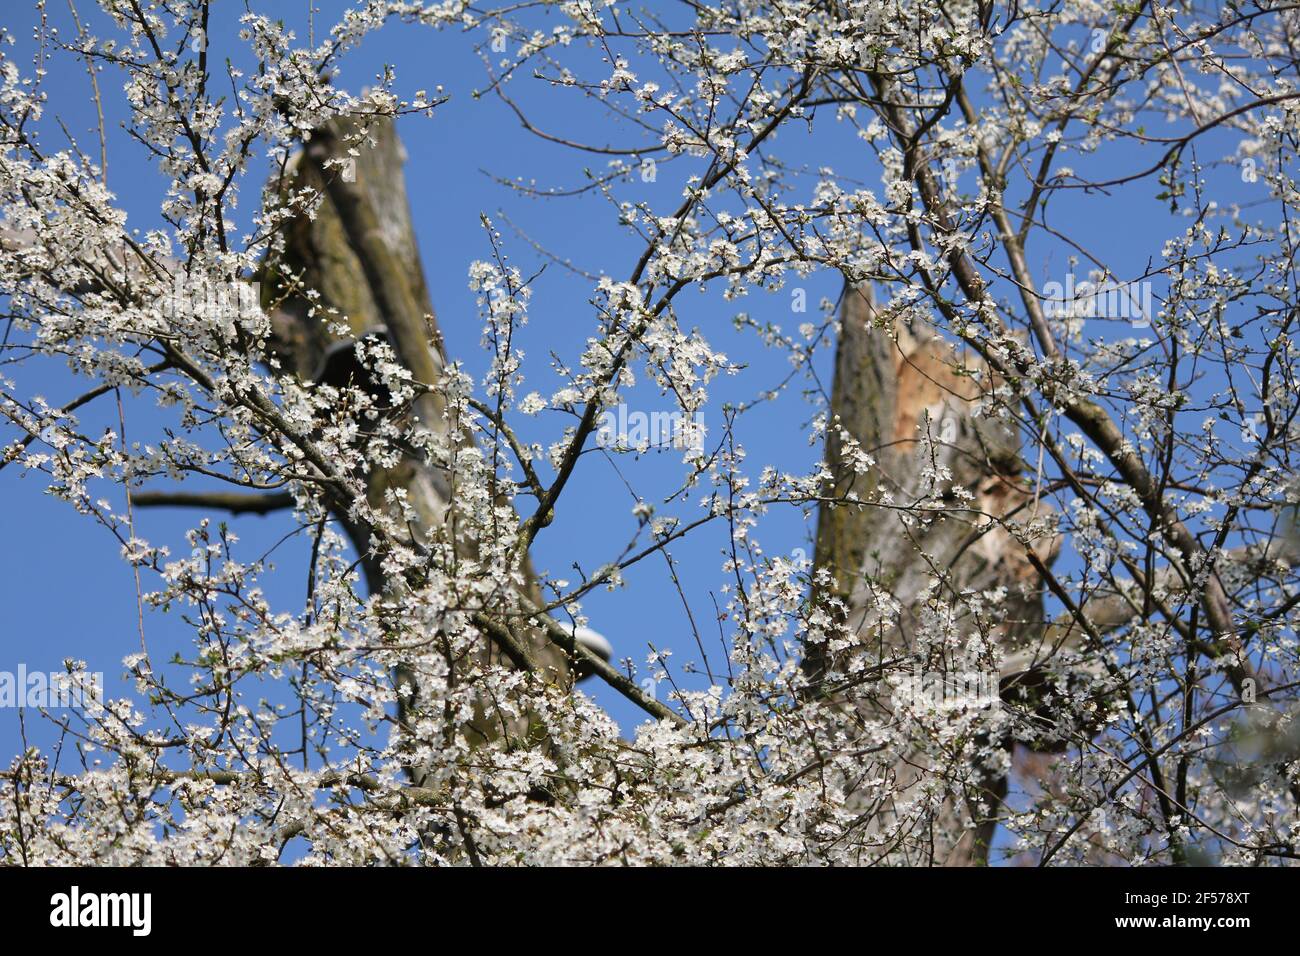 Prunus mahaleb in citypark Staddijk in Nijmegen, the Netherlands Stock Photo